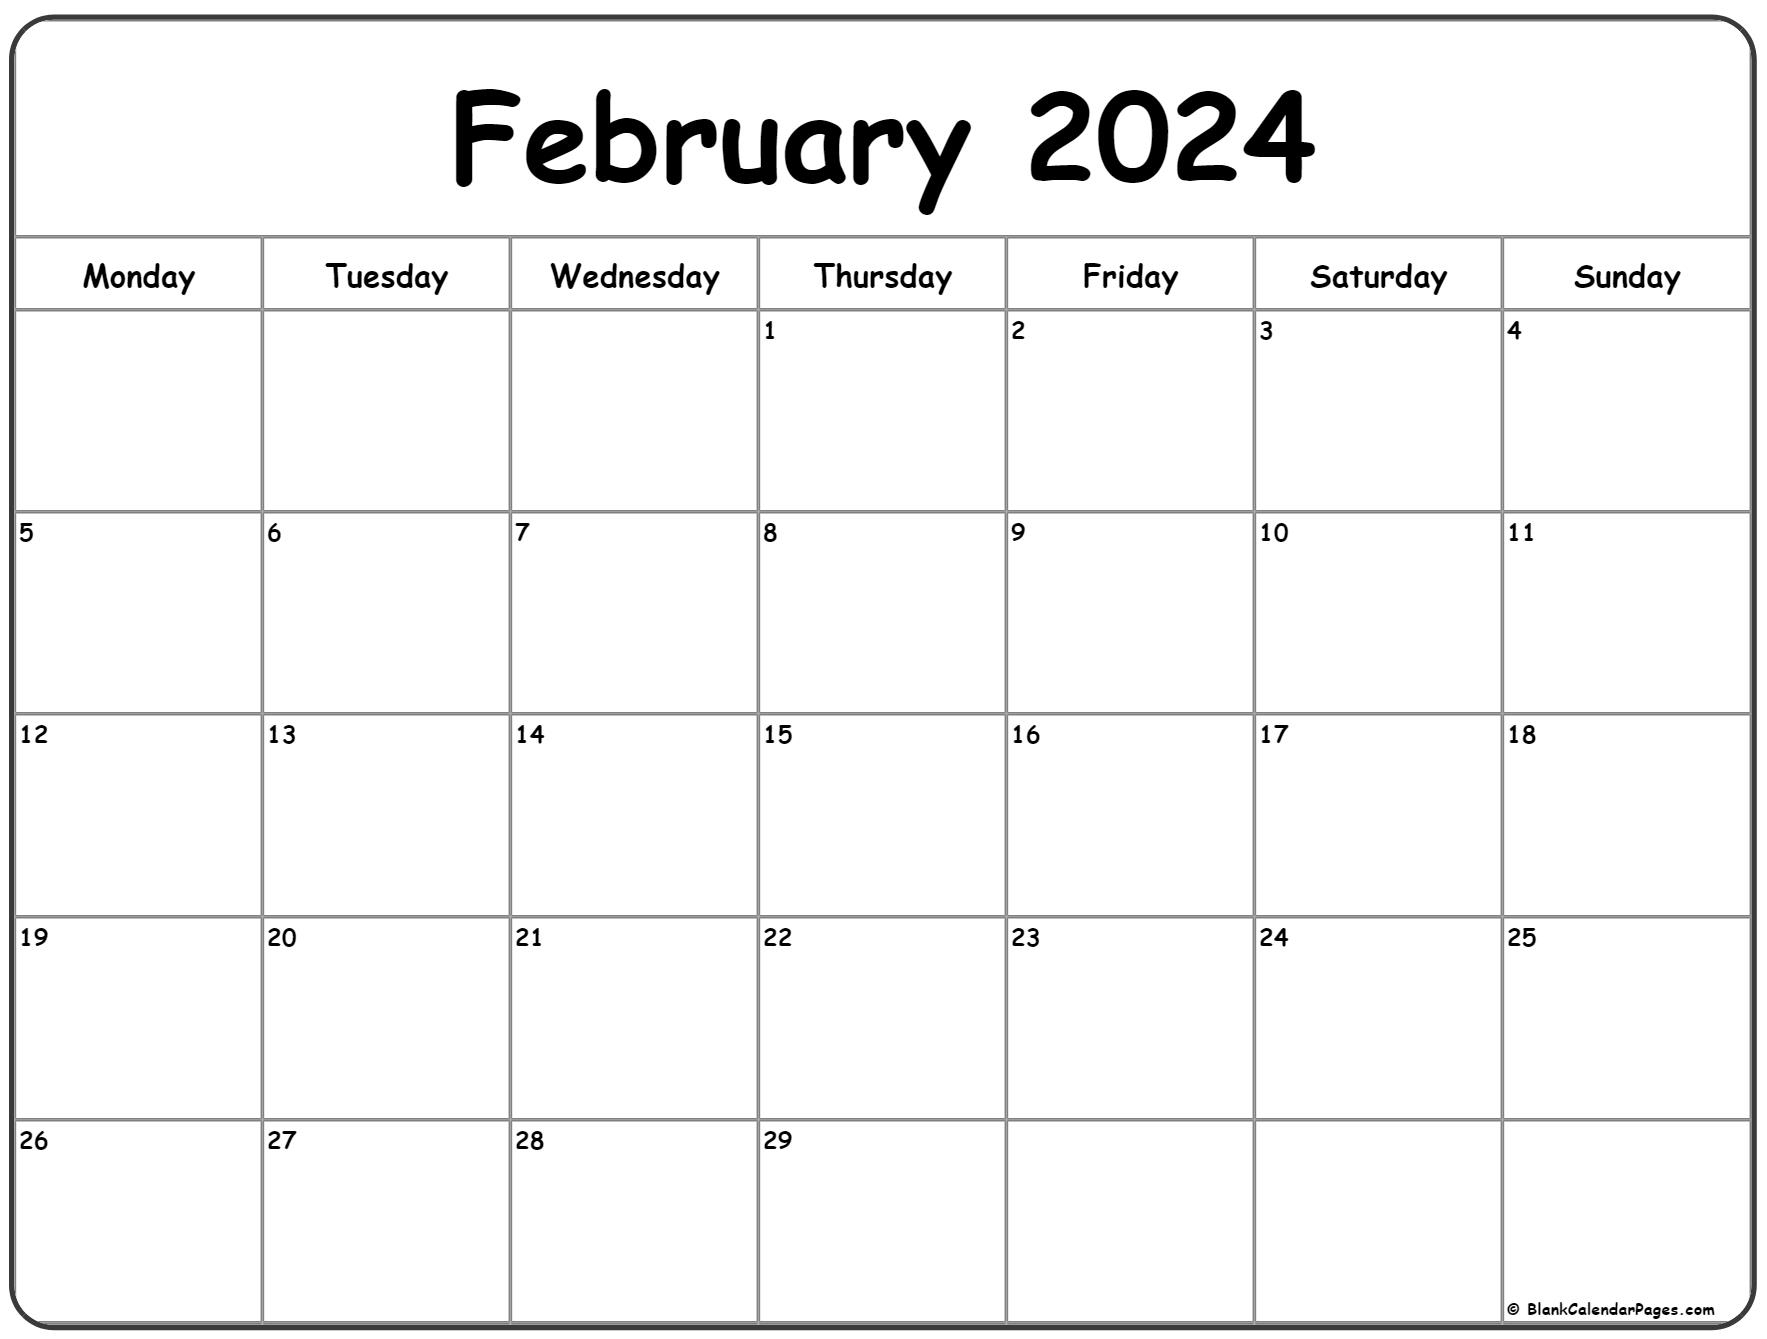 February 2024 Monday Calendar | Monday To Sunday for 2024 February Printable Calendar